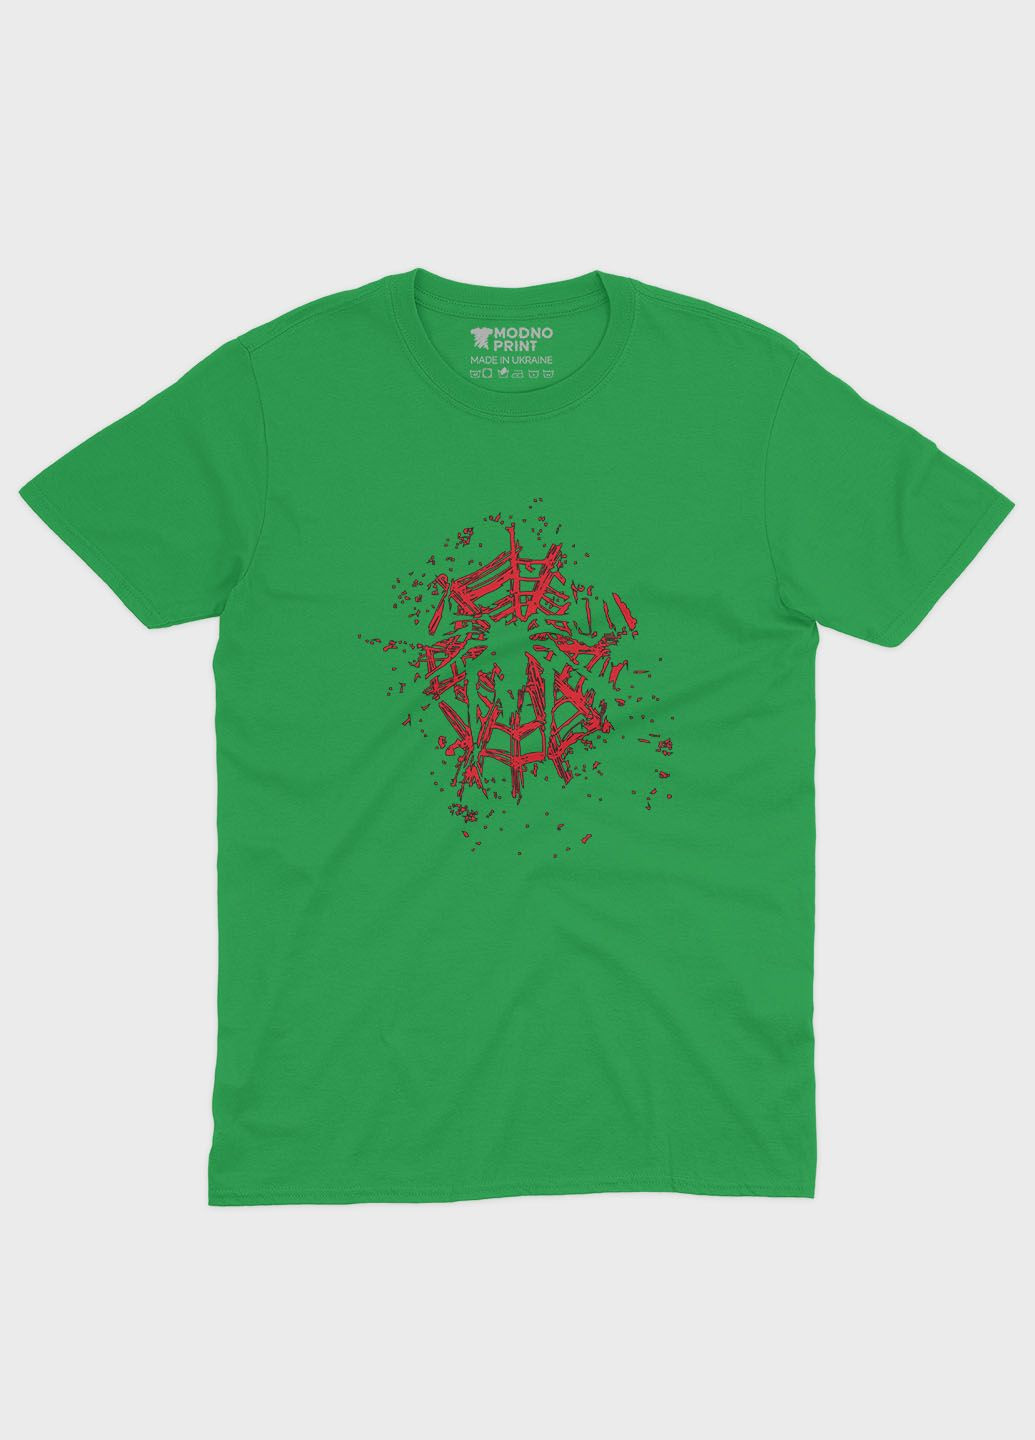 Зелена демісезонна футболка для хлопчика з принтом супергероя - людина-павук (ts001-1-keg-006-014-003-b) Modno